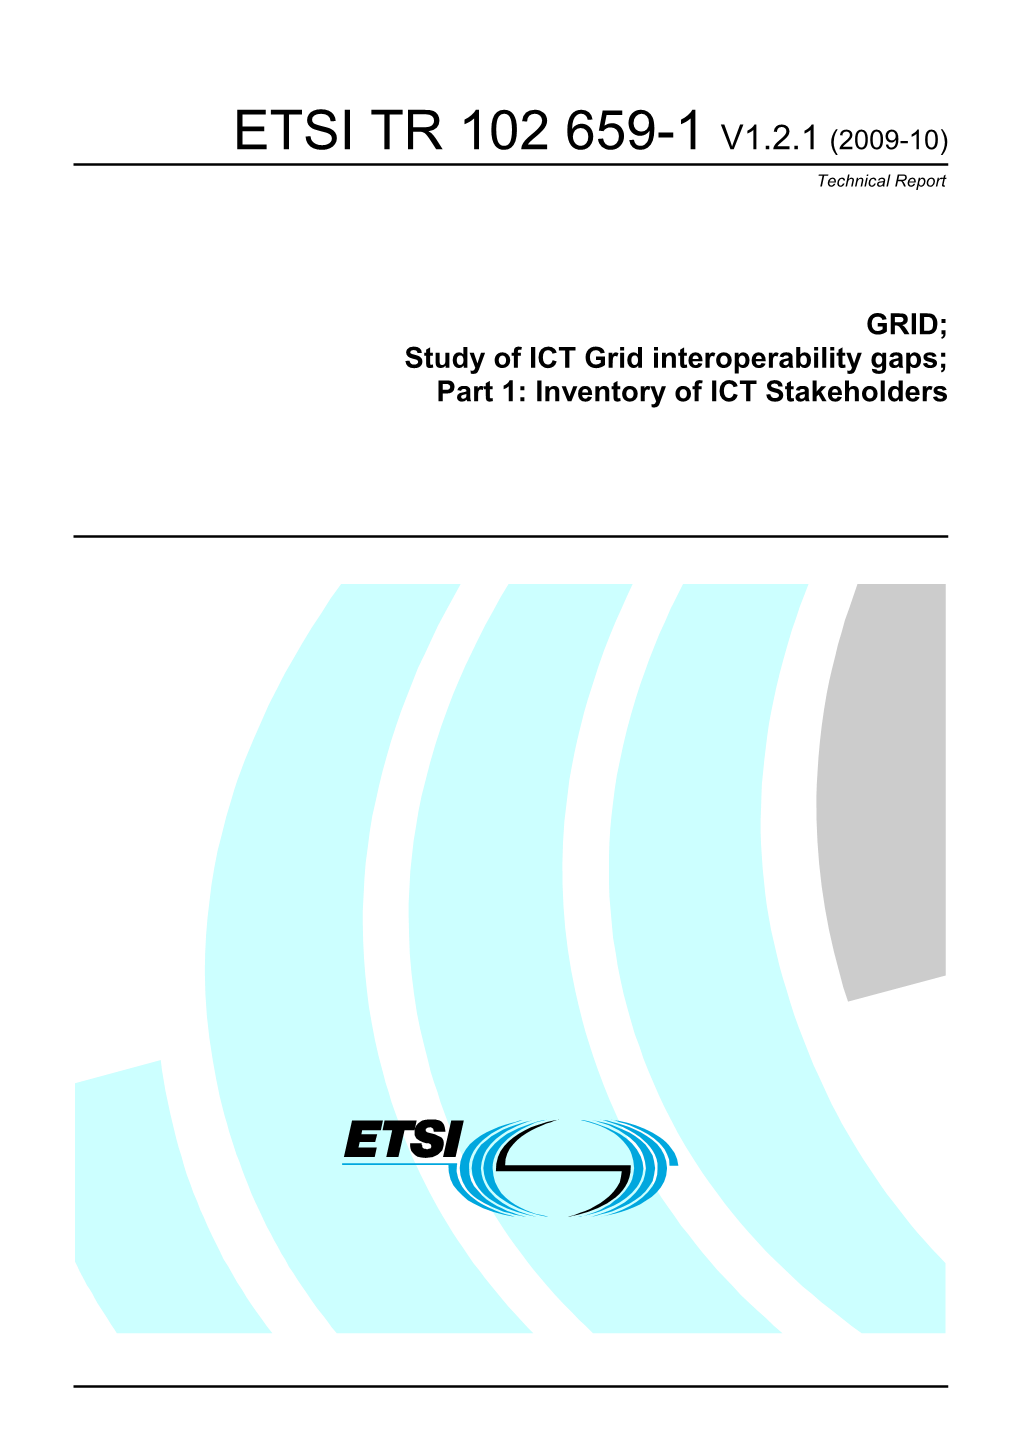 ETSI TR 102 659-1 V1.2.1 (2009-10) Technical Report